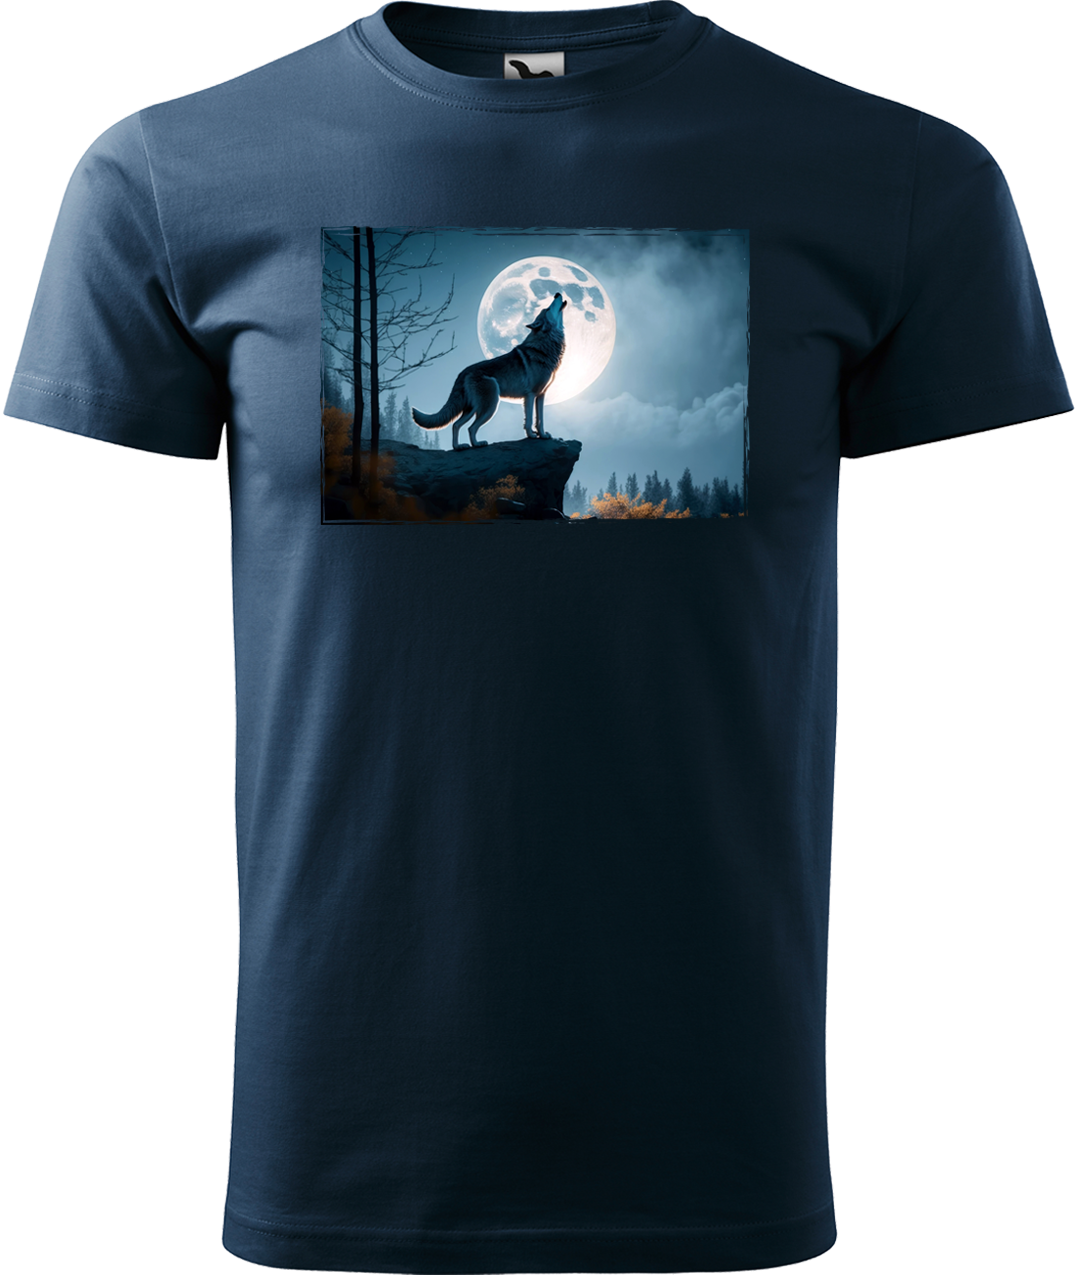 Pánské tričko s vlkem - Vyjící vlk Velikost: M, Barva: Námořní modrá (02)